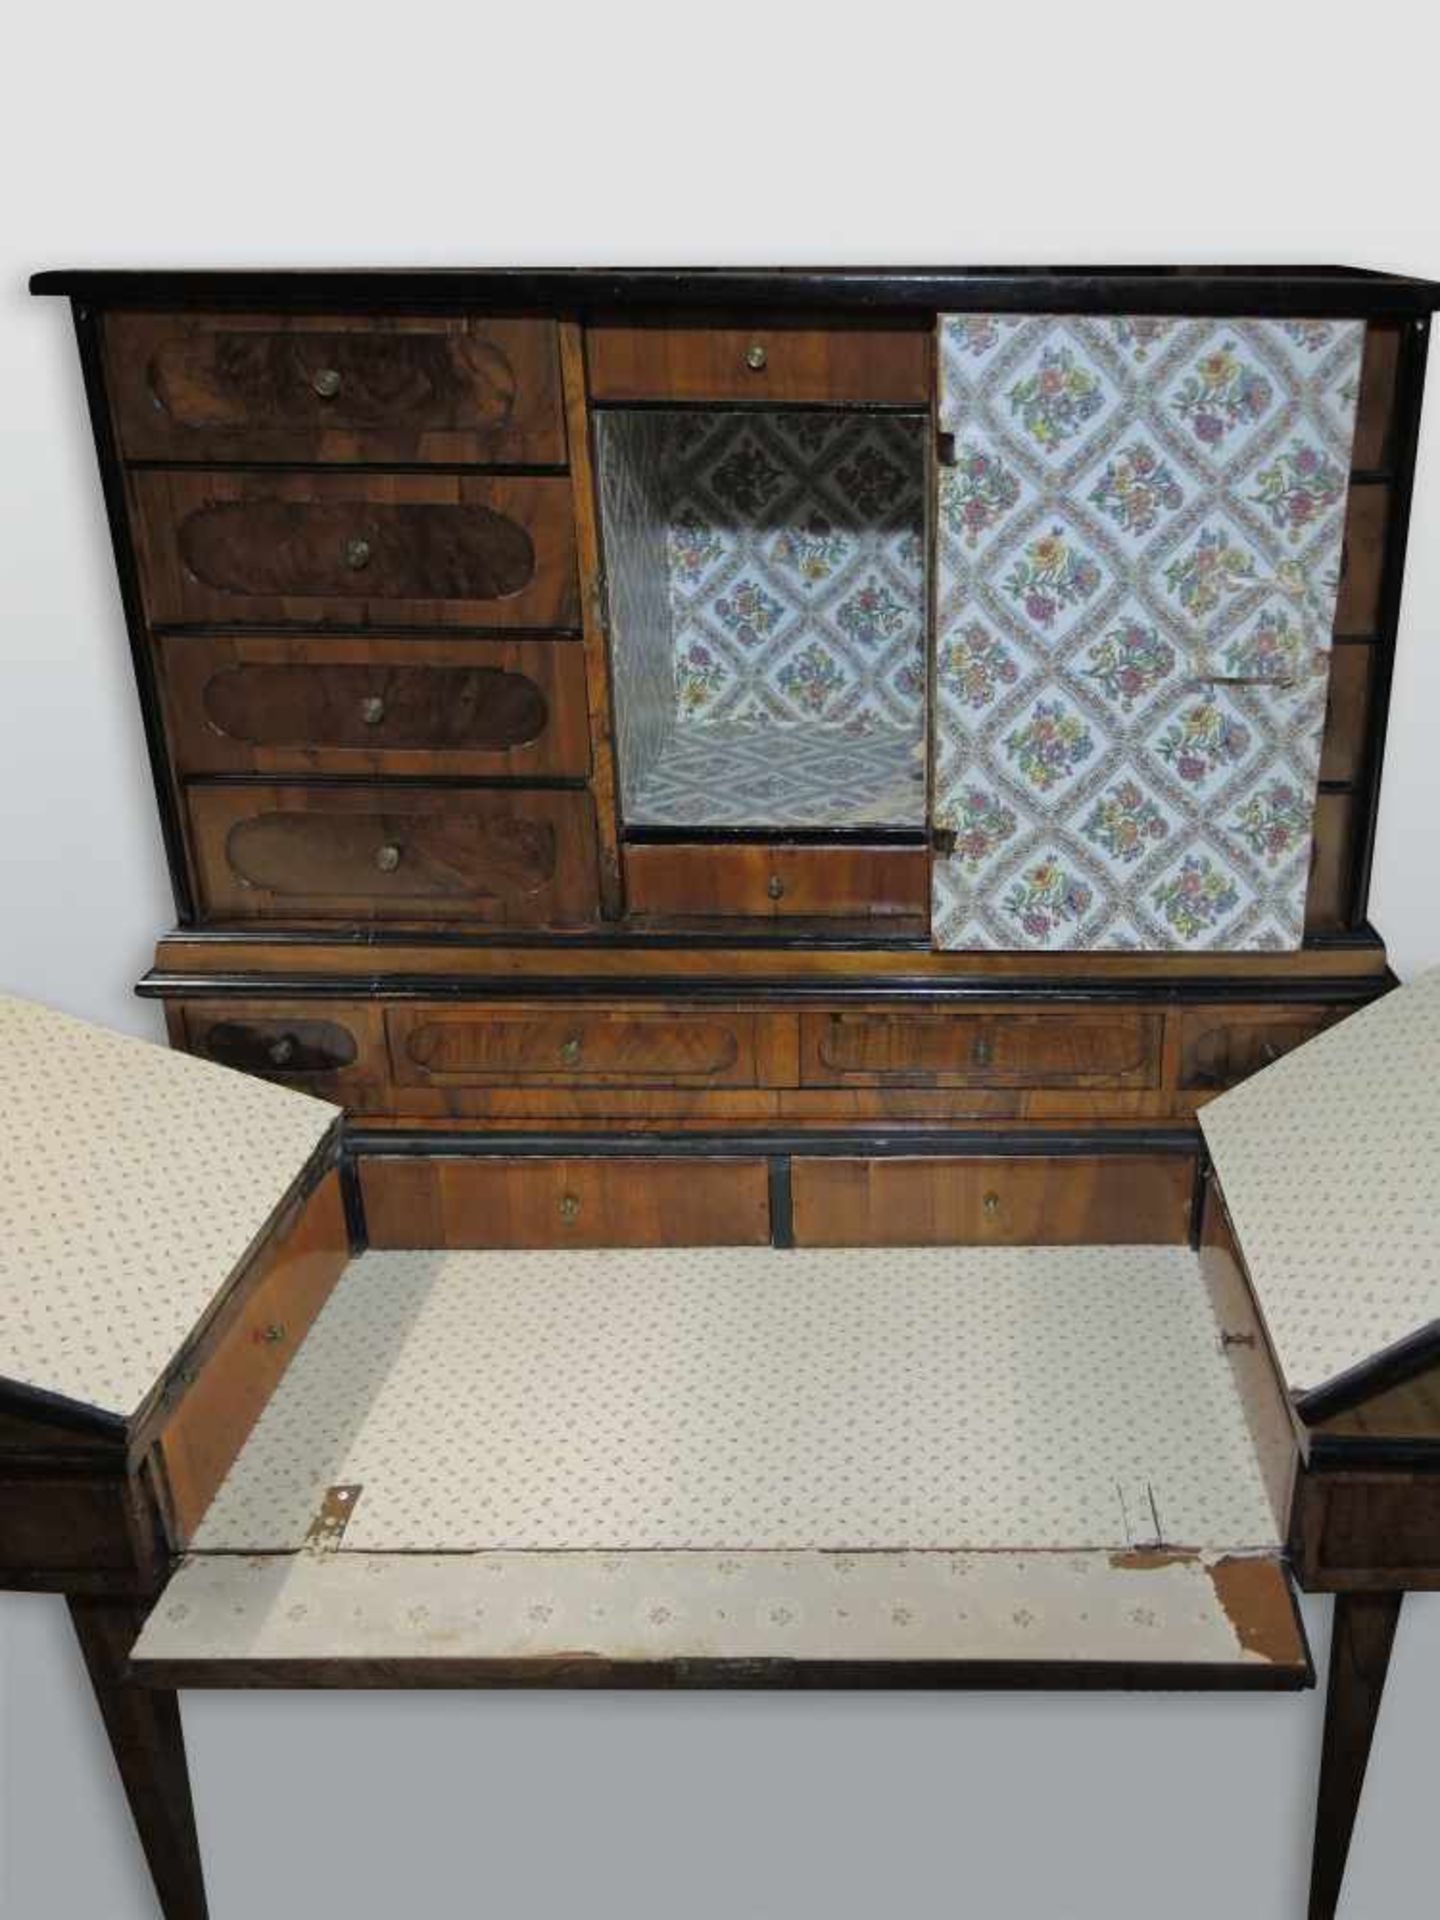 Aufsatz-Schreibmöbel mit TabernakelNussbaum-Untergestell. Aufsatz um 1820, Rest um 1750, - Image 2 of 3